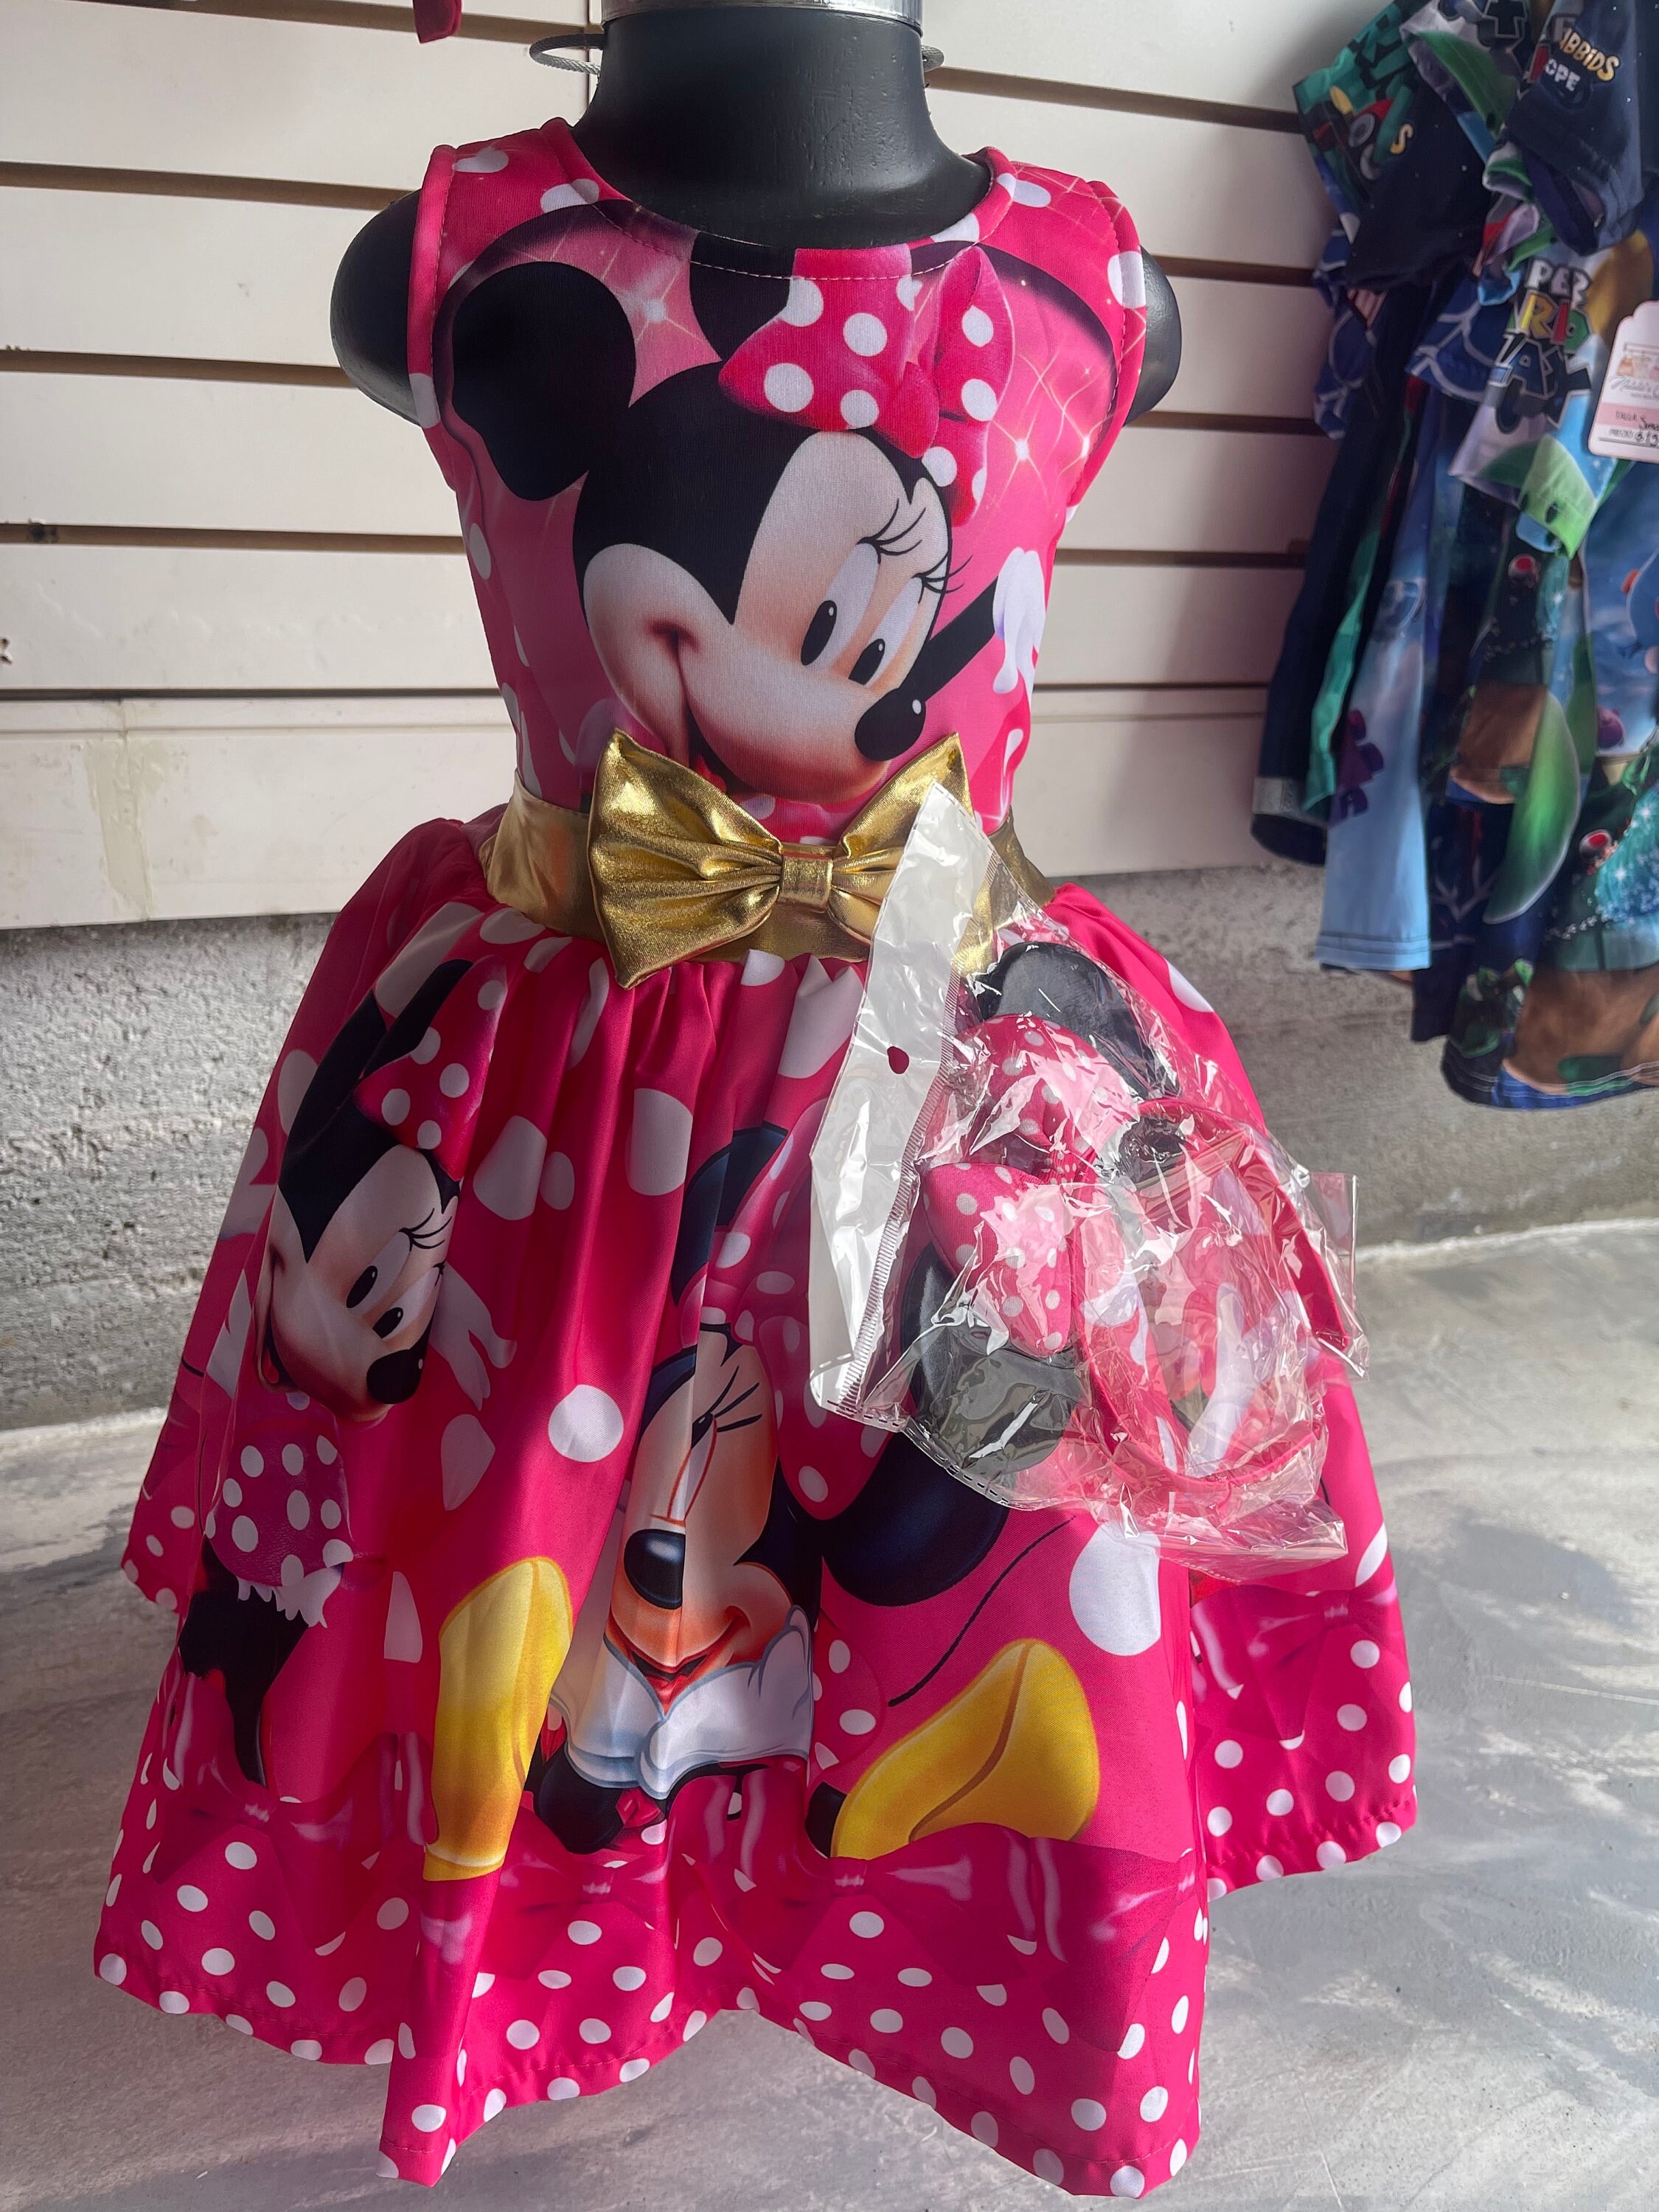 Robe en tulle à motif Minnie Mouse™ (du 2 au 8 ans)